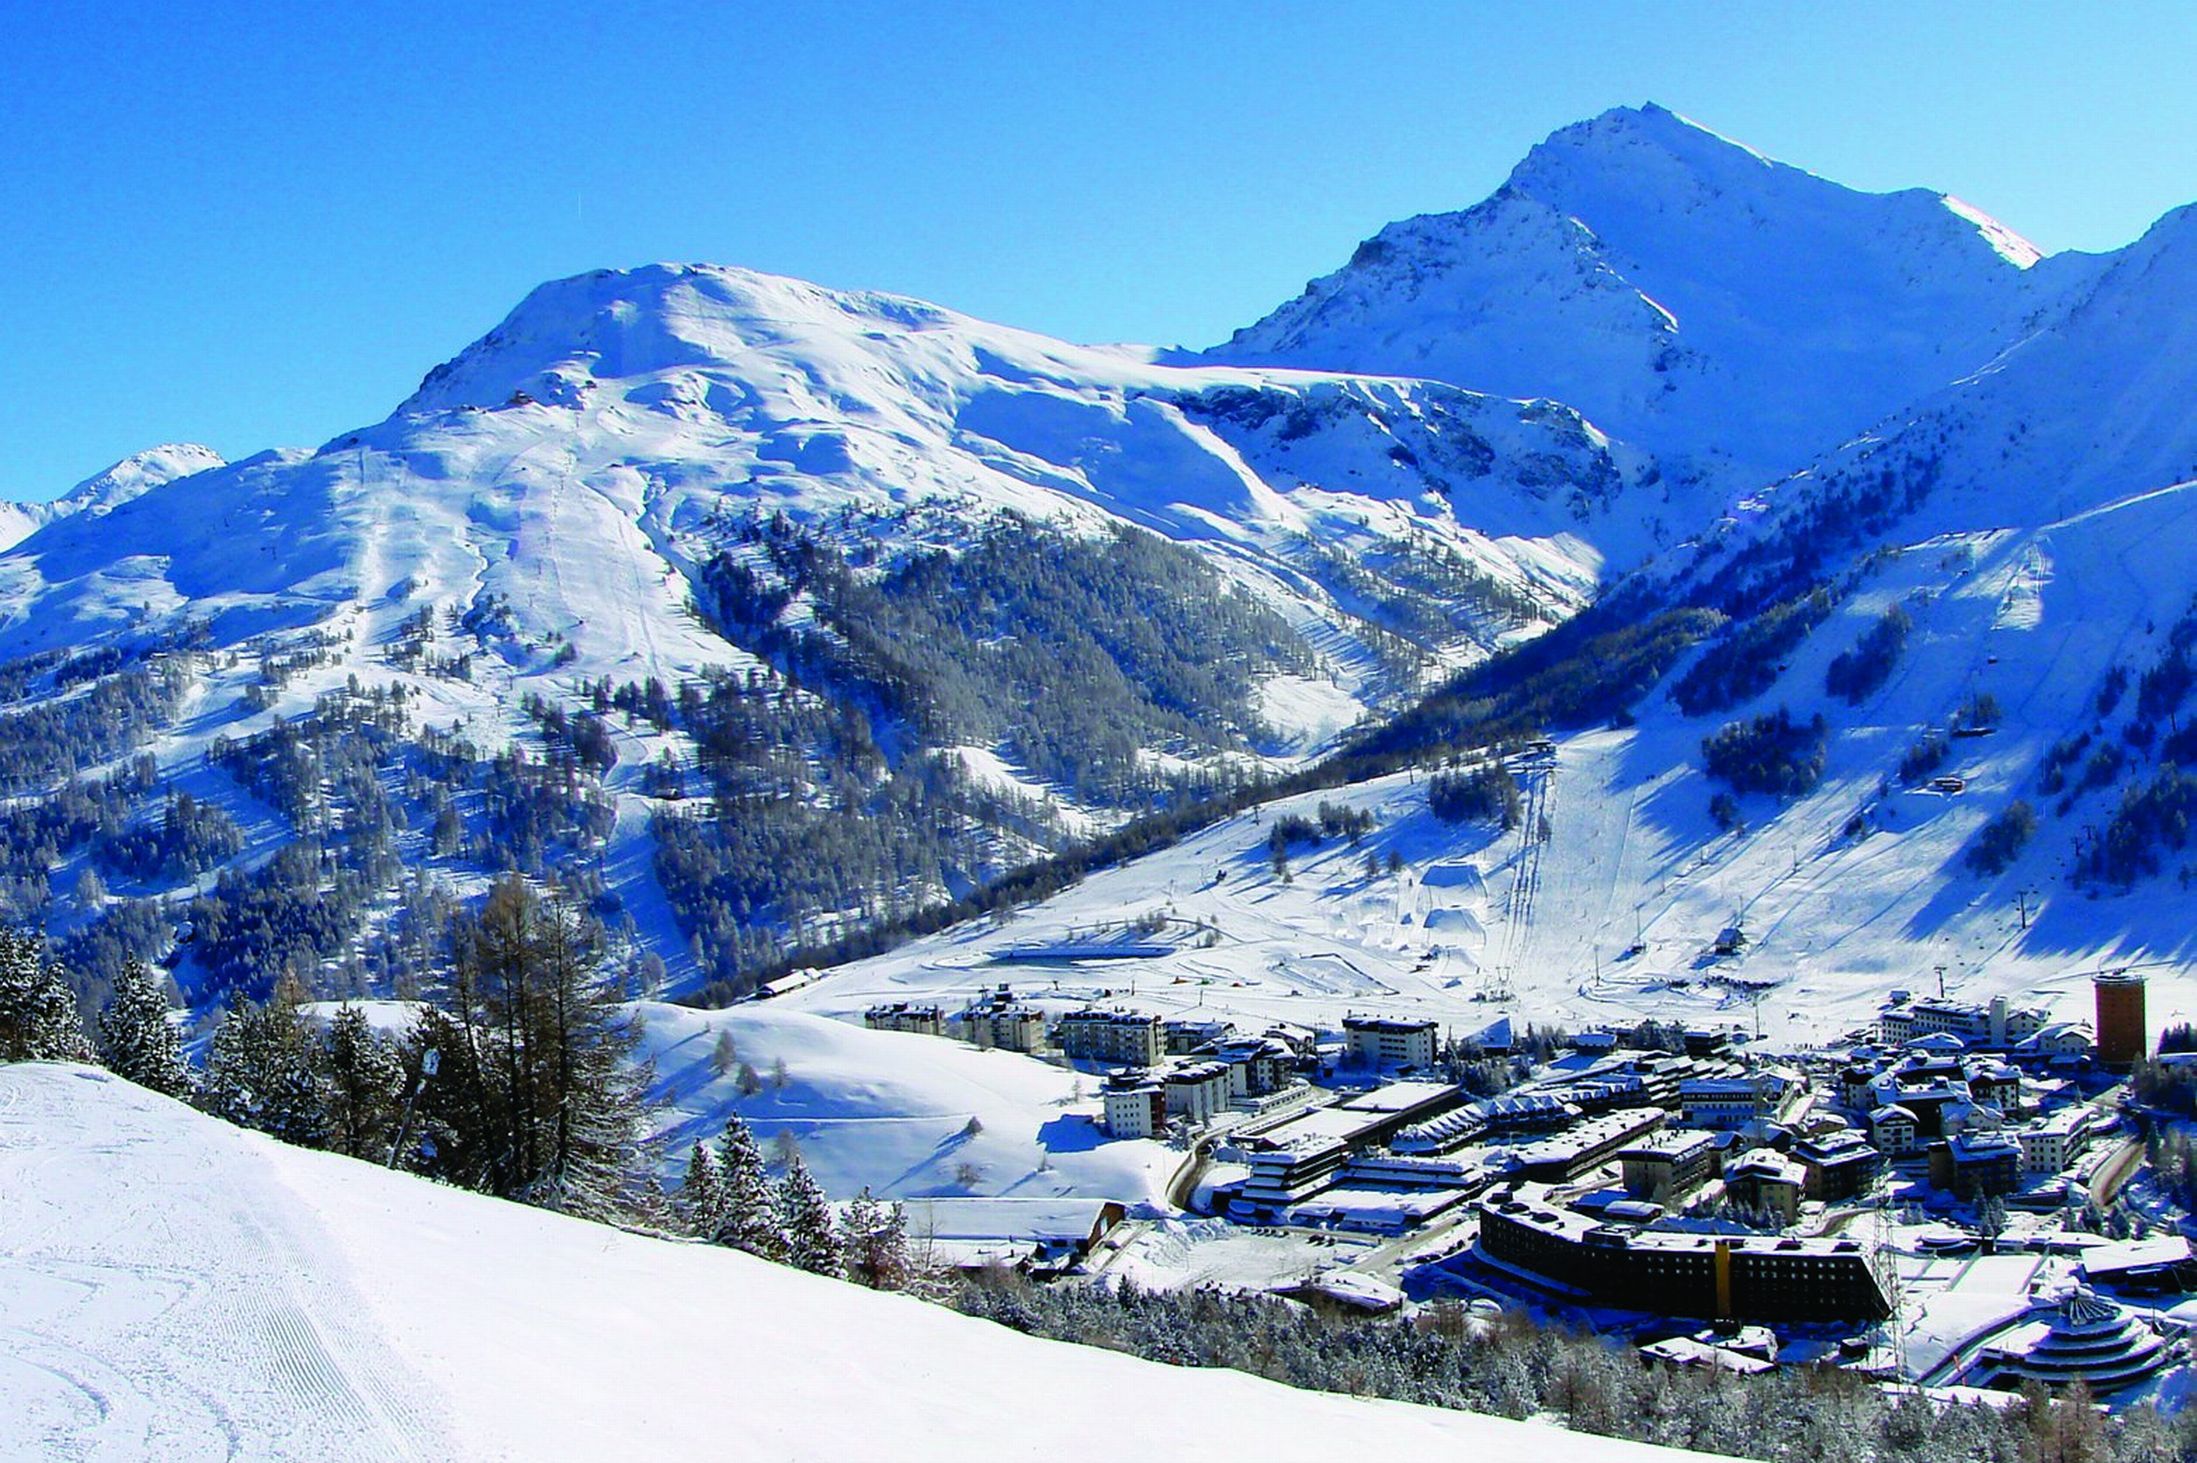 Panorama ski resort Sestriere, Italy .zastavki.com